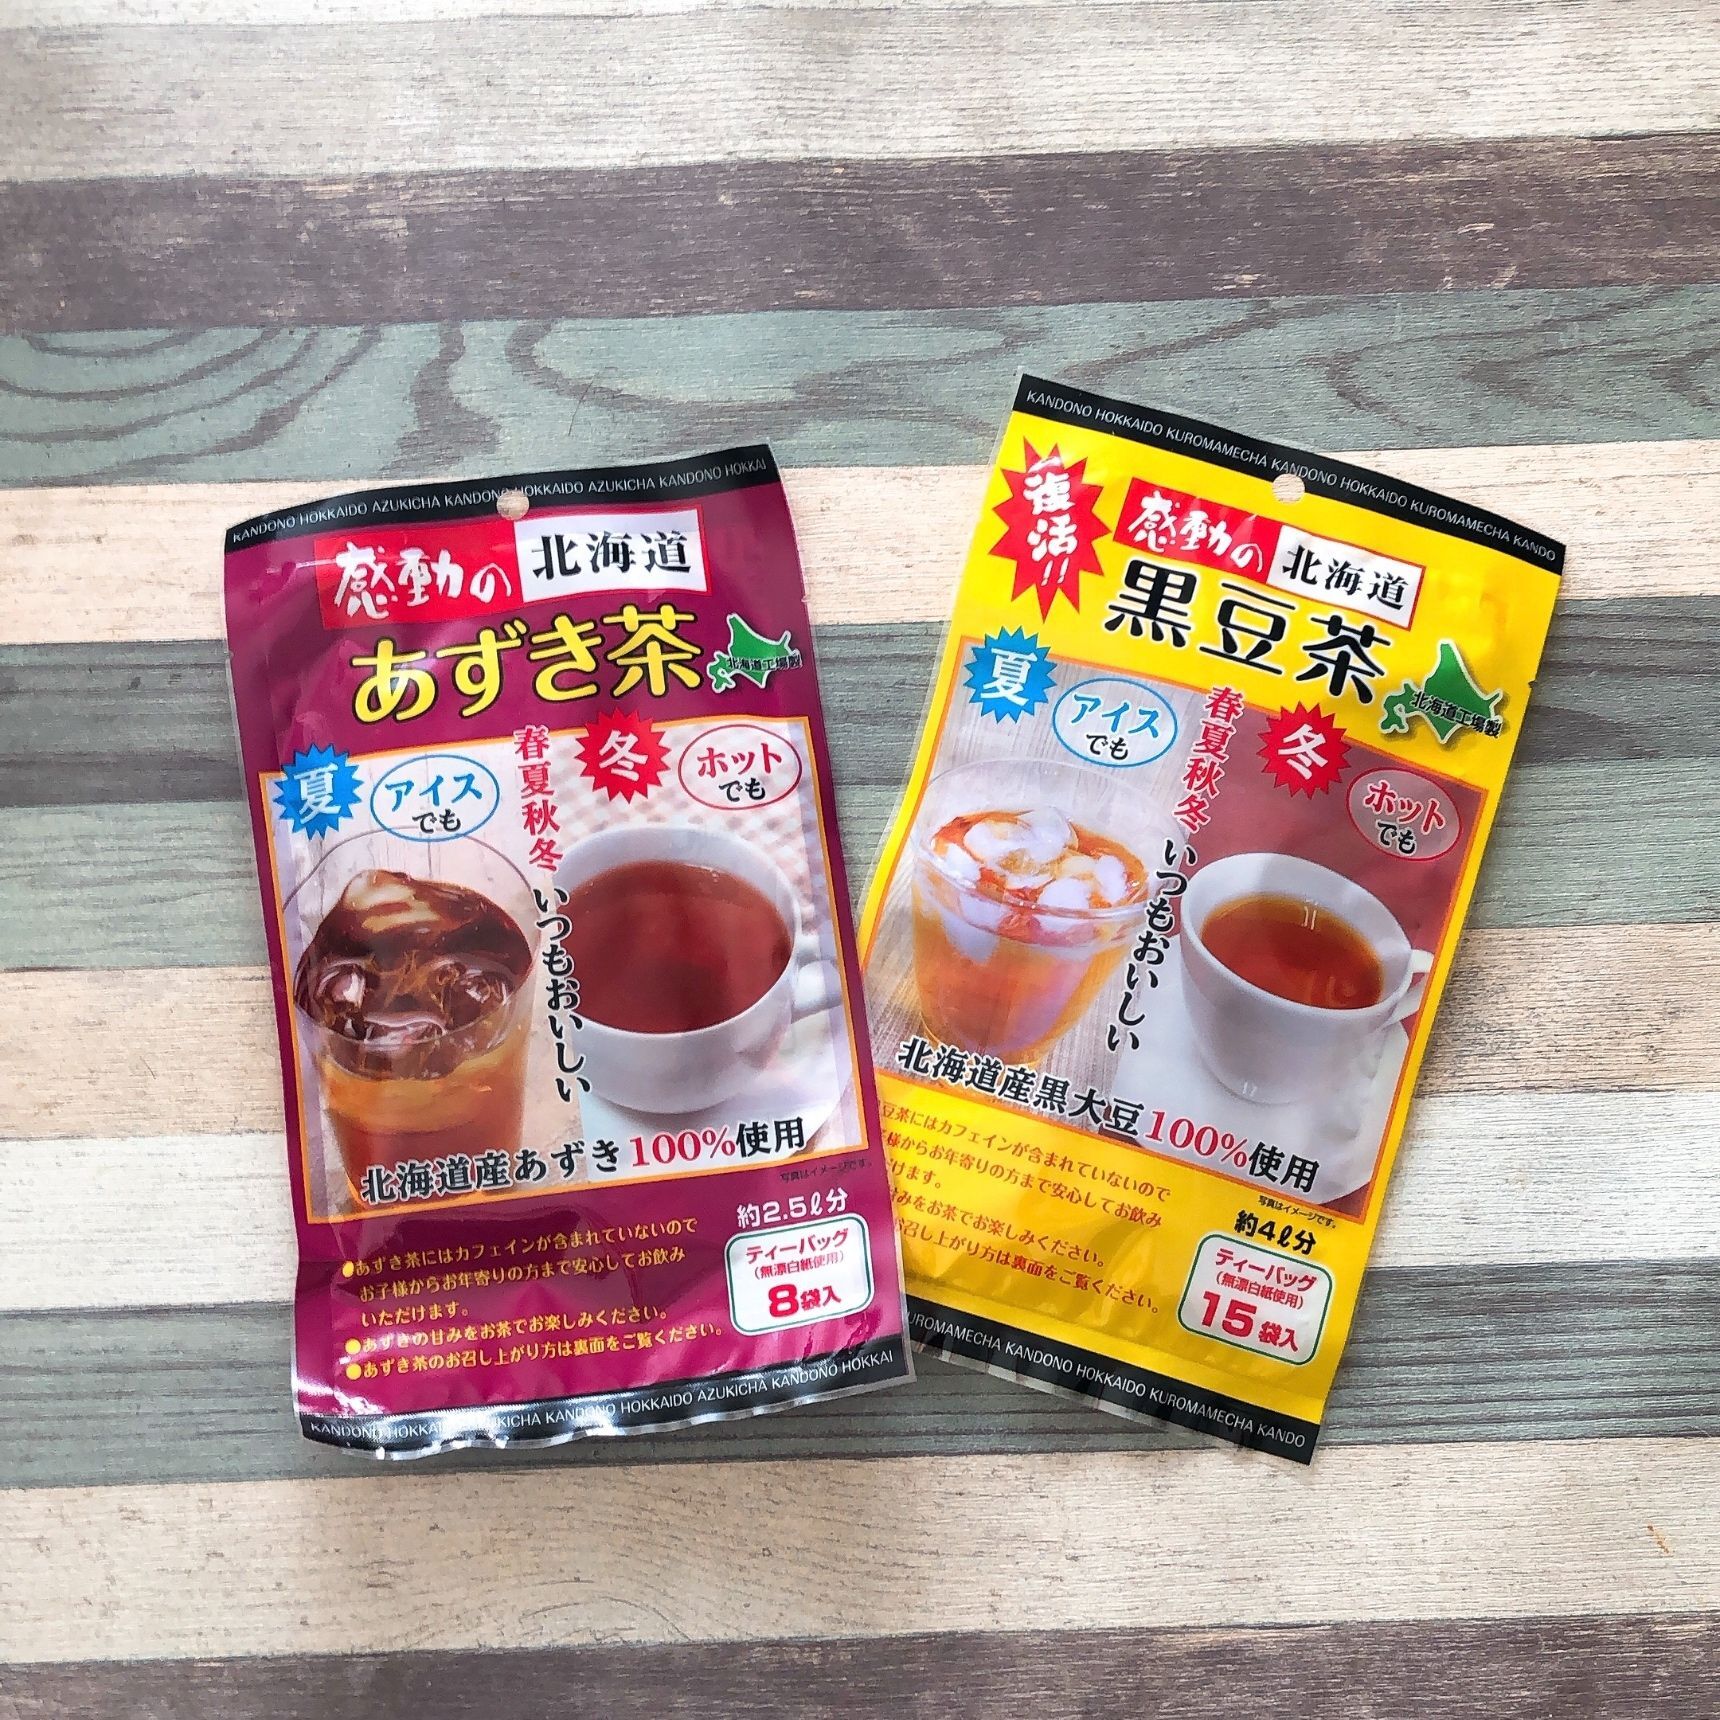 カフェインレスのお茶が100円で買えちゃう 暮らしニスタ